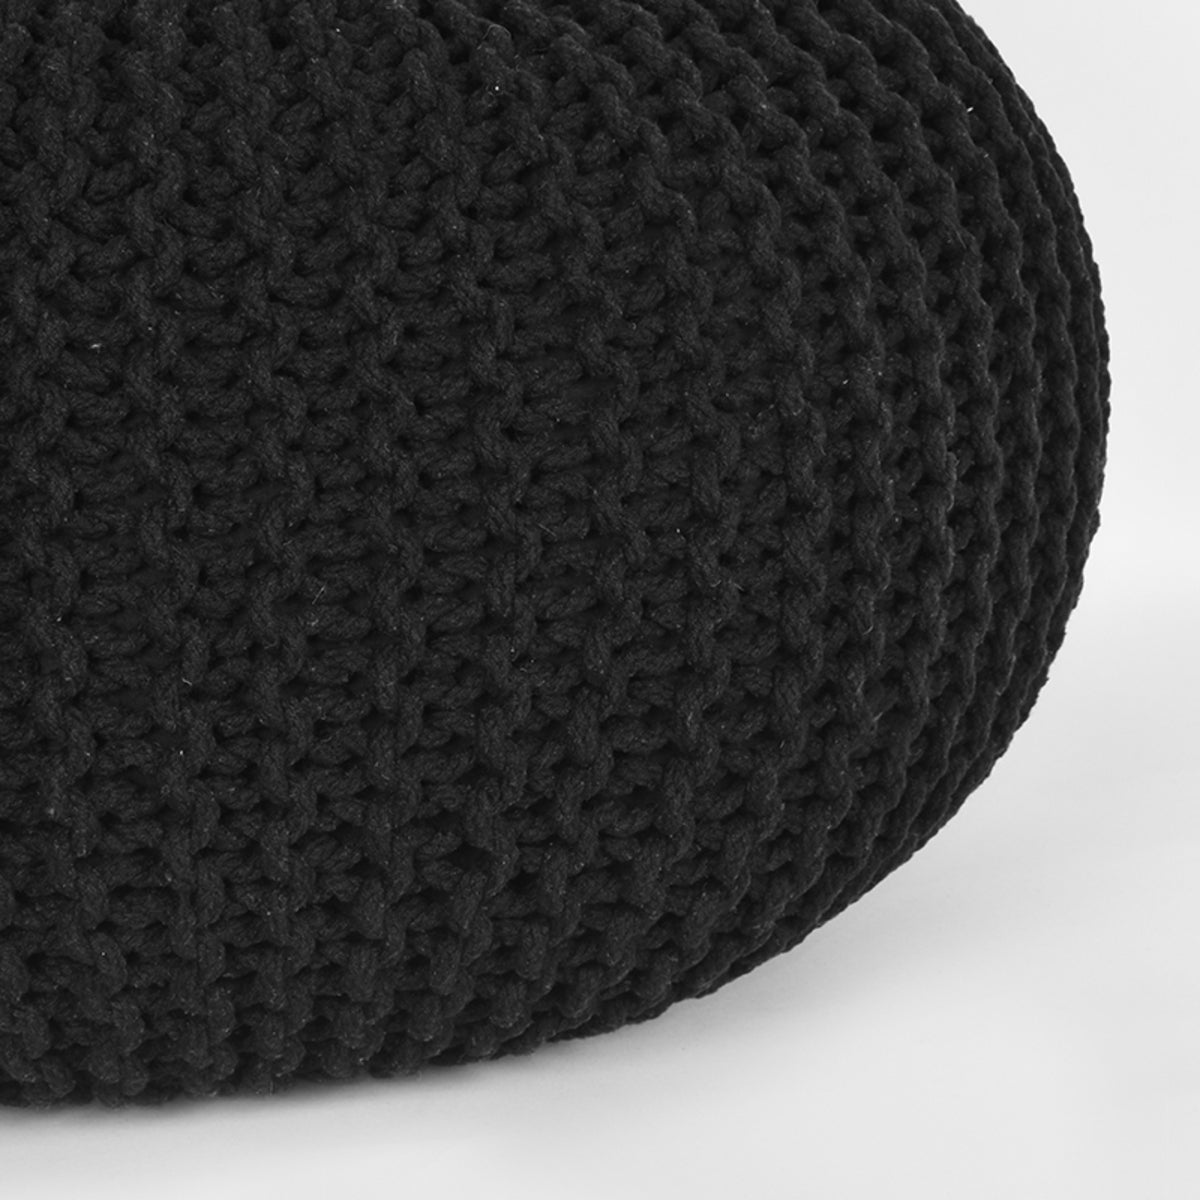 Pouf de Nancy tricoté - Fait main - Poufs - Industriel - Rond - Coton - Noir - 70 x 70 x 35 cm | L